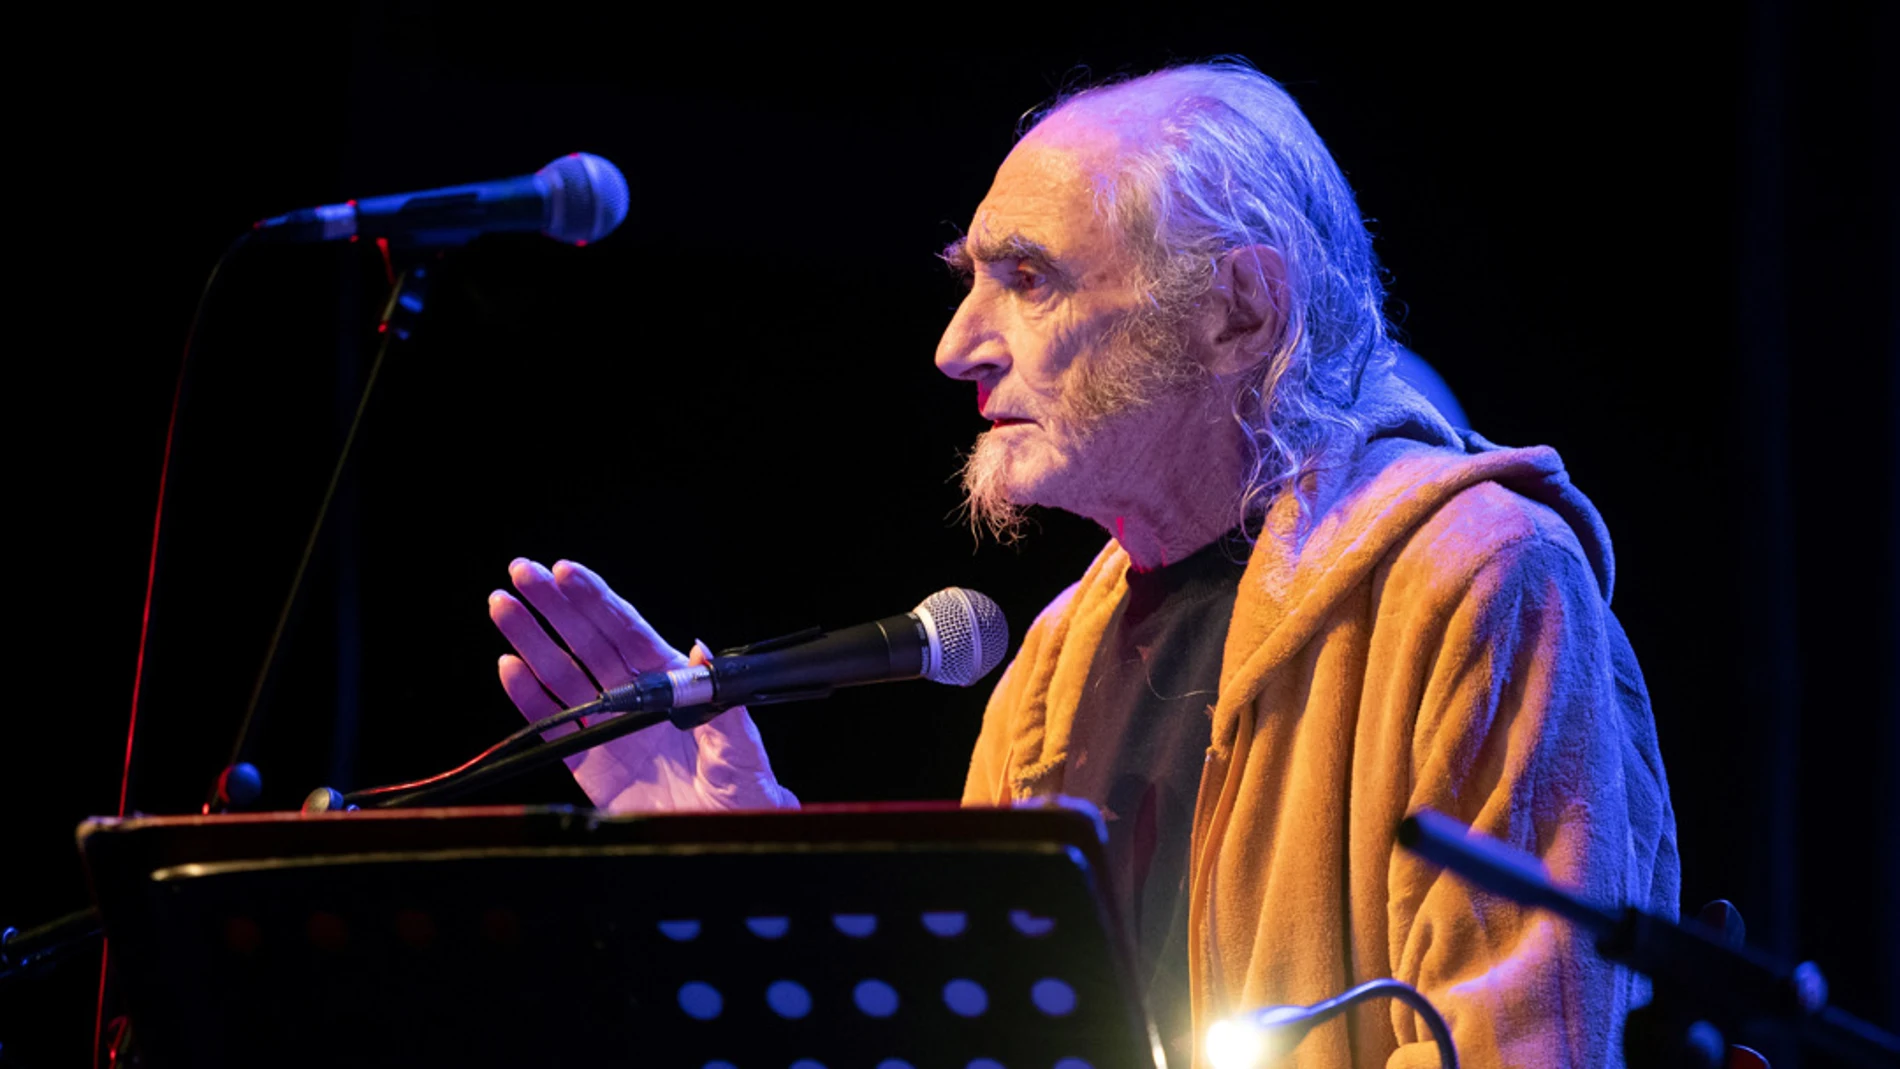 Fallece el músico y cantautor Pau Riba a sus 73 años de edad